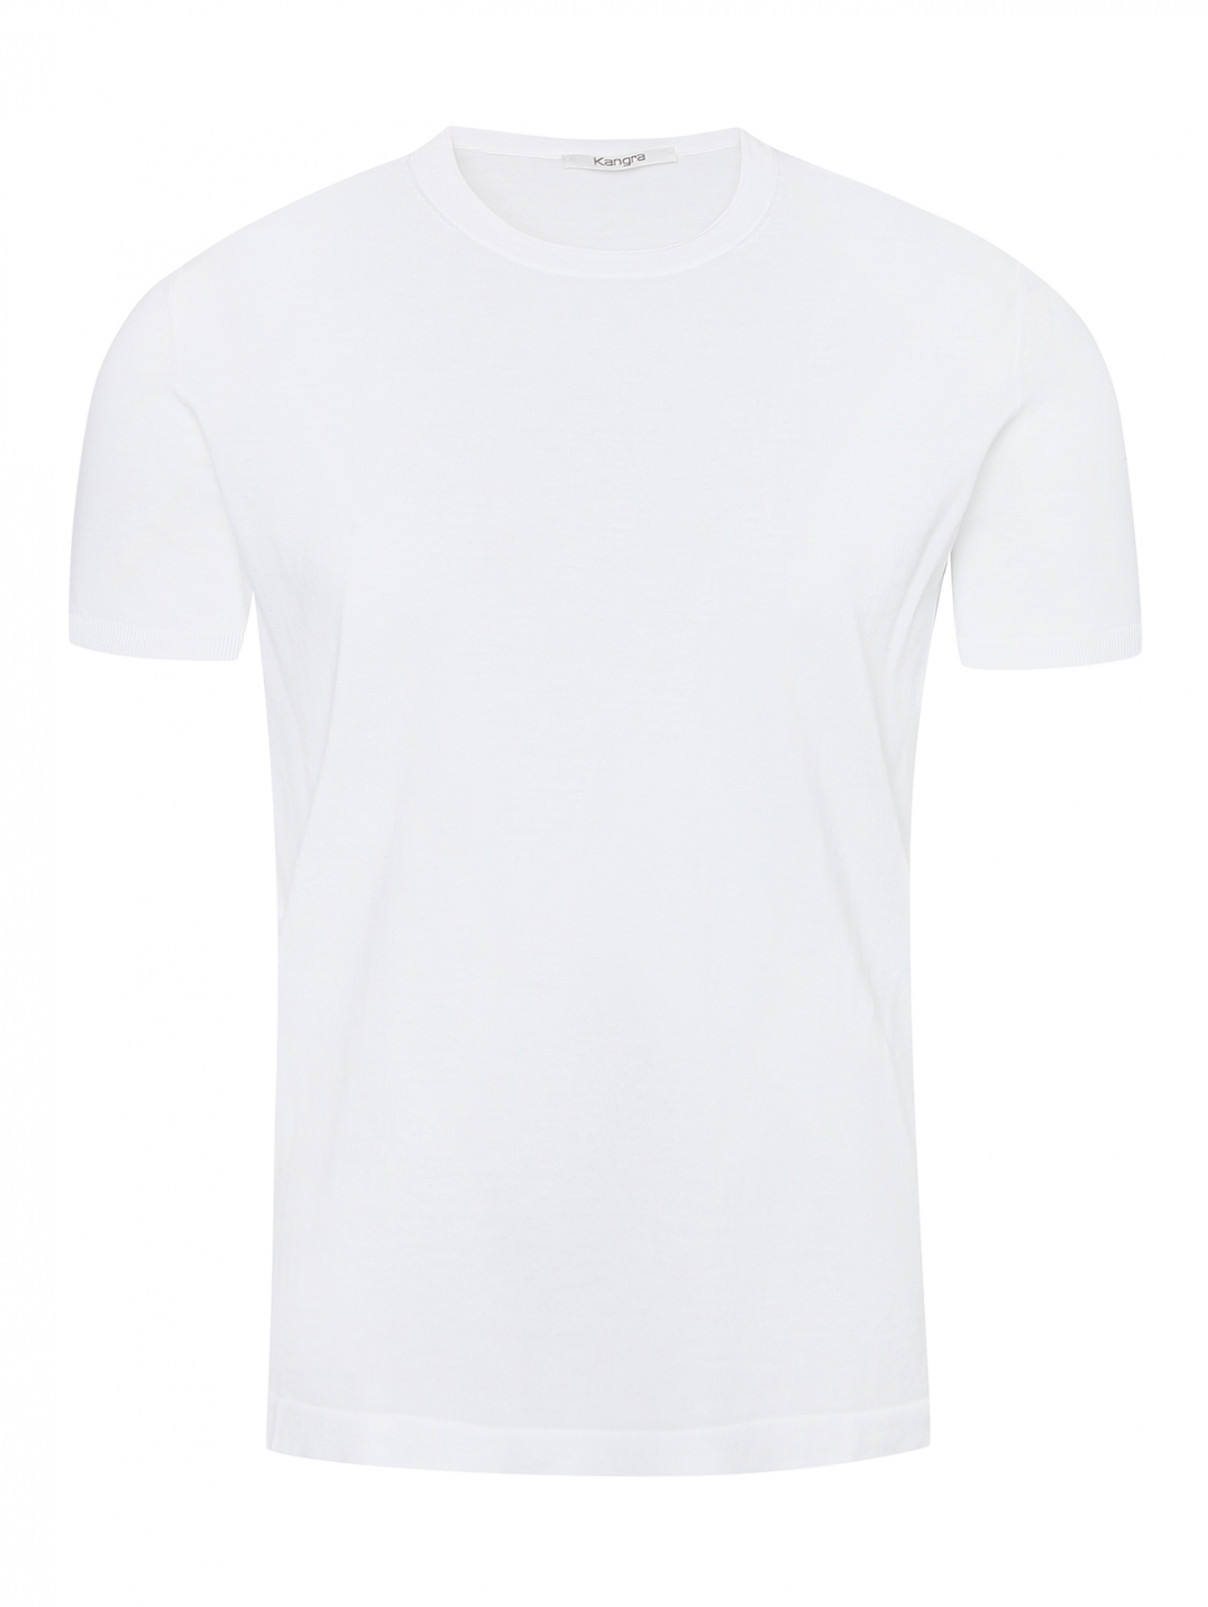 Трикотажная футболка из хлопка Kangra Cashmere  –  Общий вид  – Цвет:  Белый